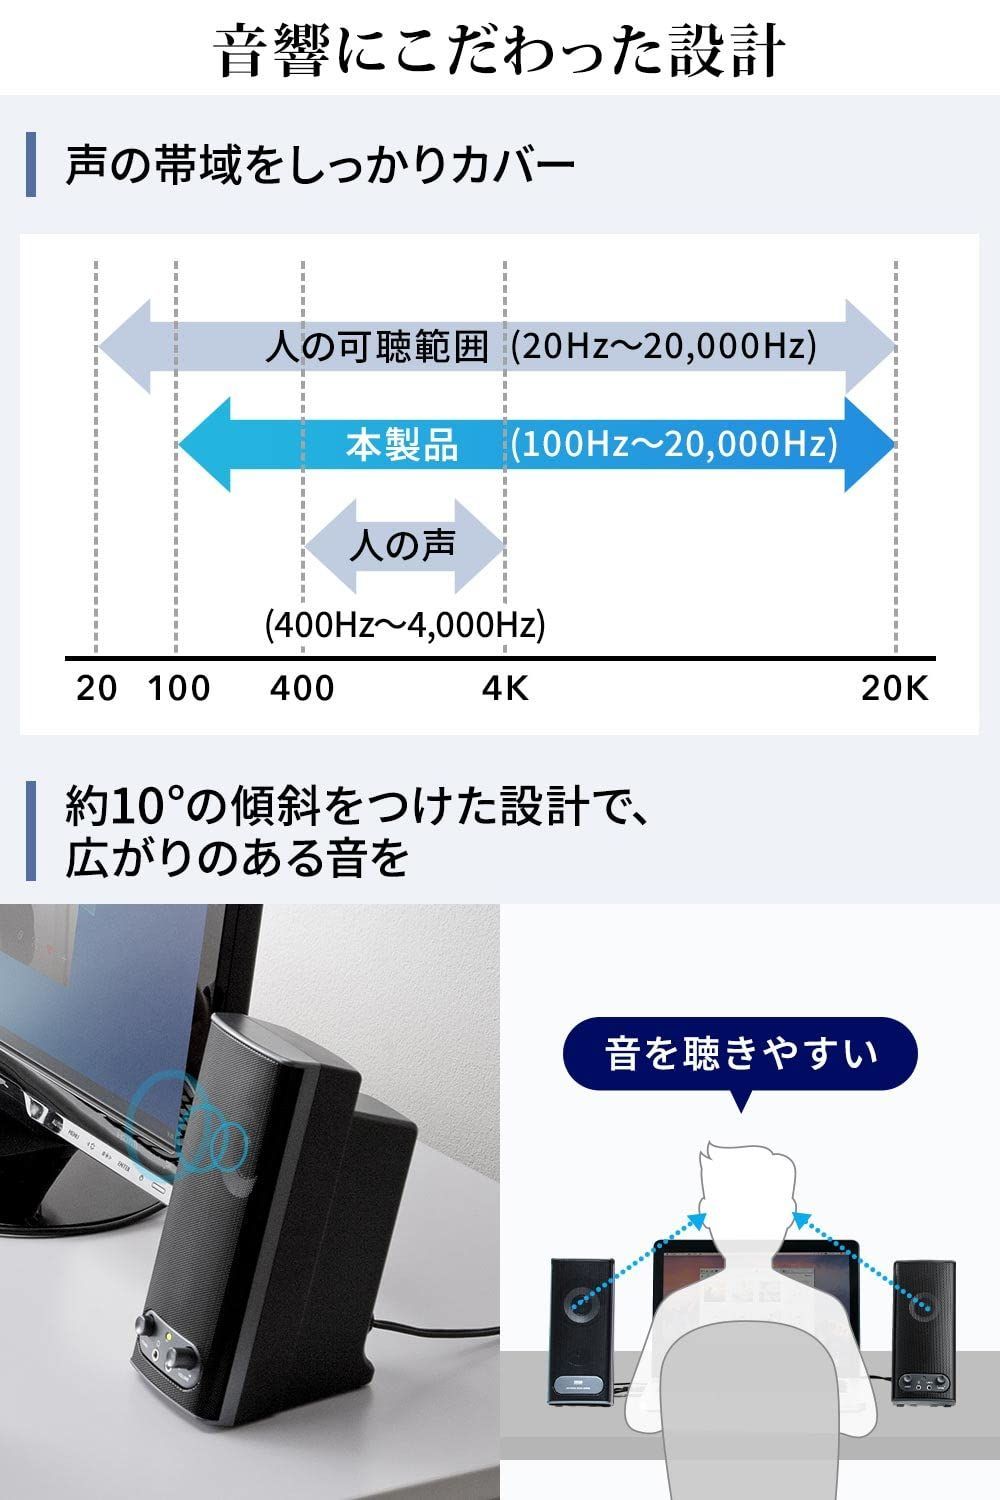 サンワダイレクト スピーカー テレビ パソコン 対応 10W 400-SP027